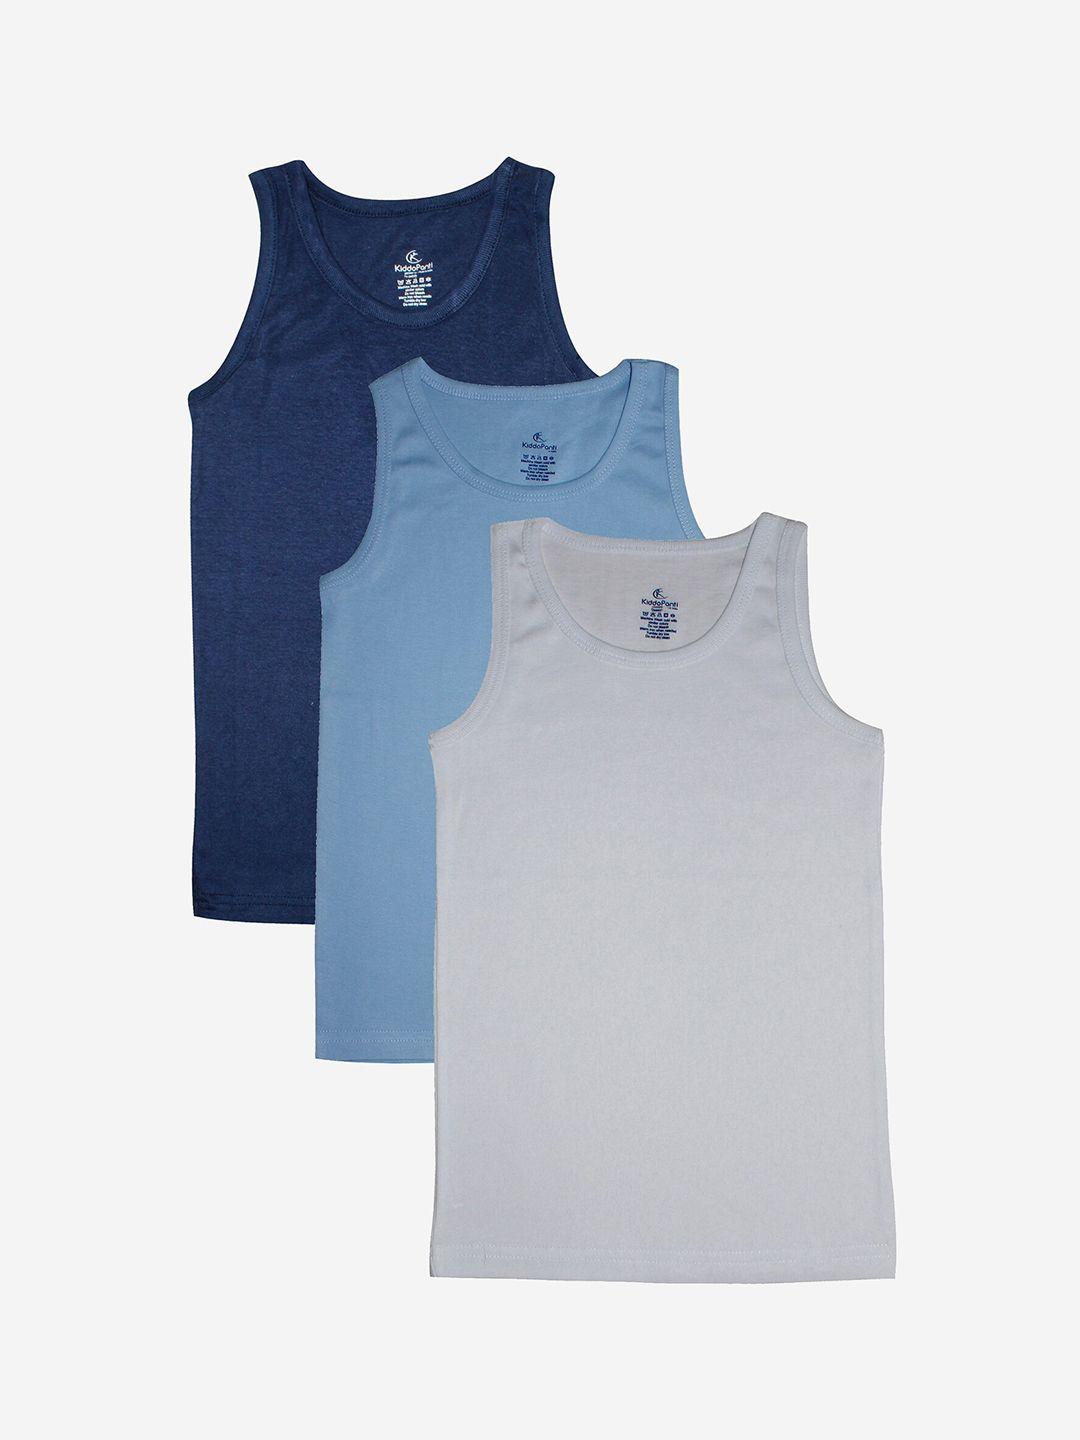 KiddoPanti Pack of 3 Boys Navy ,Sky Blue & White Rib vest